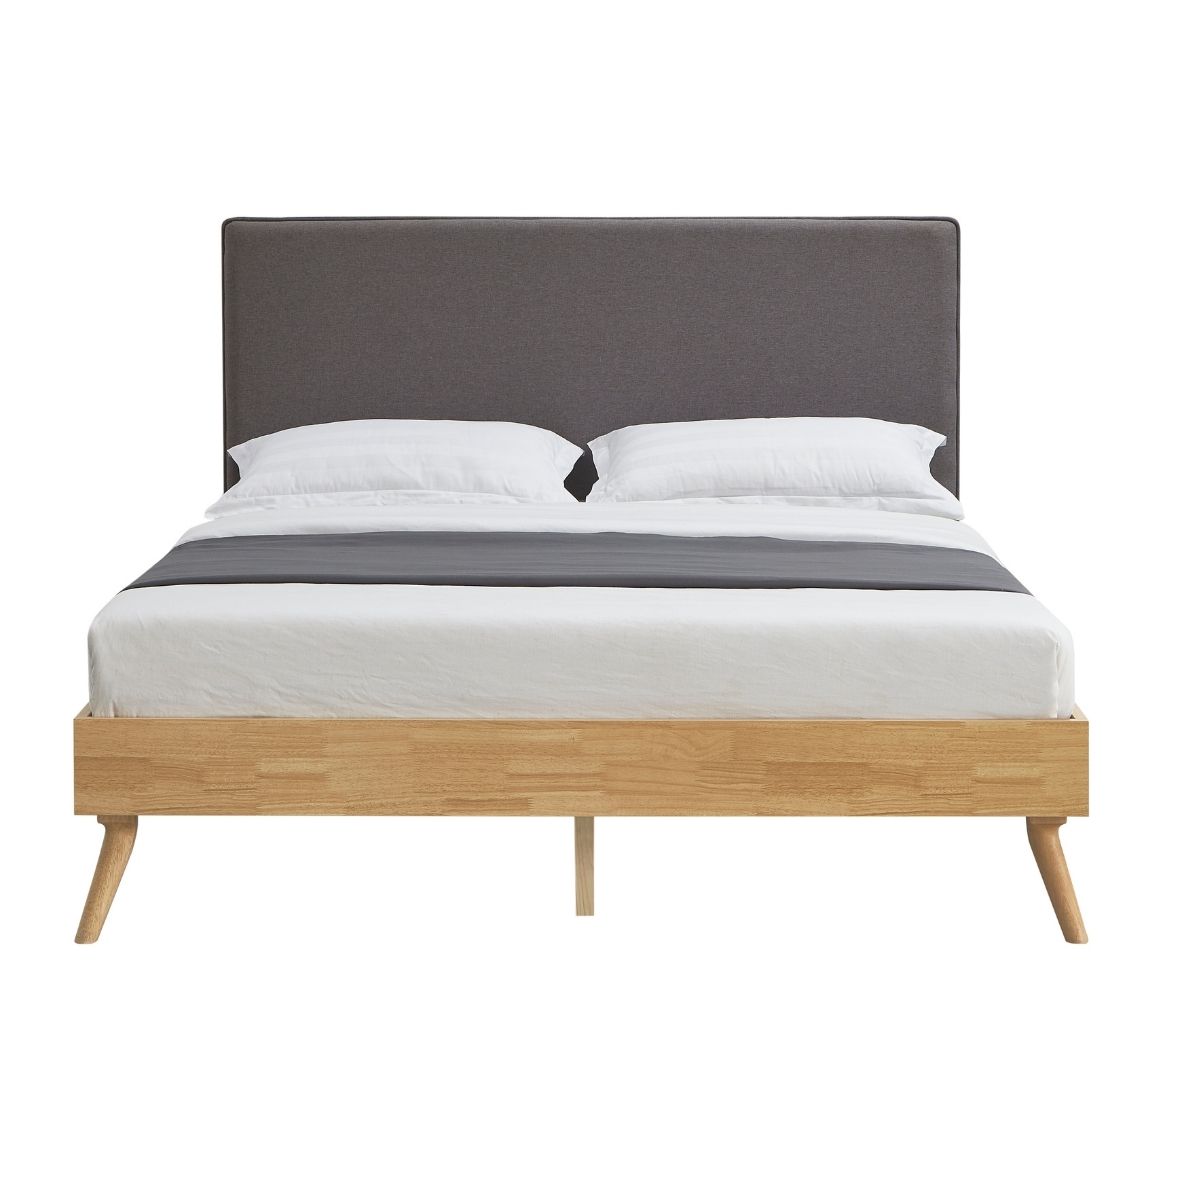 Natural Oak Ensemble Bed Frame Wooden Slat Fabric Headboard Queen